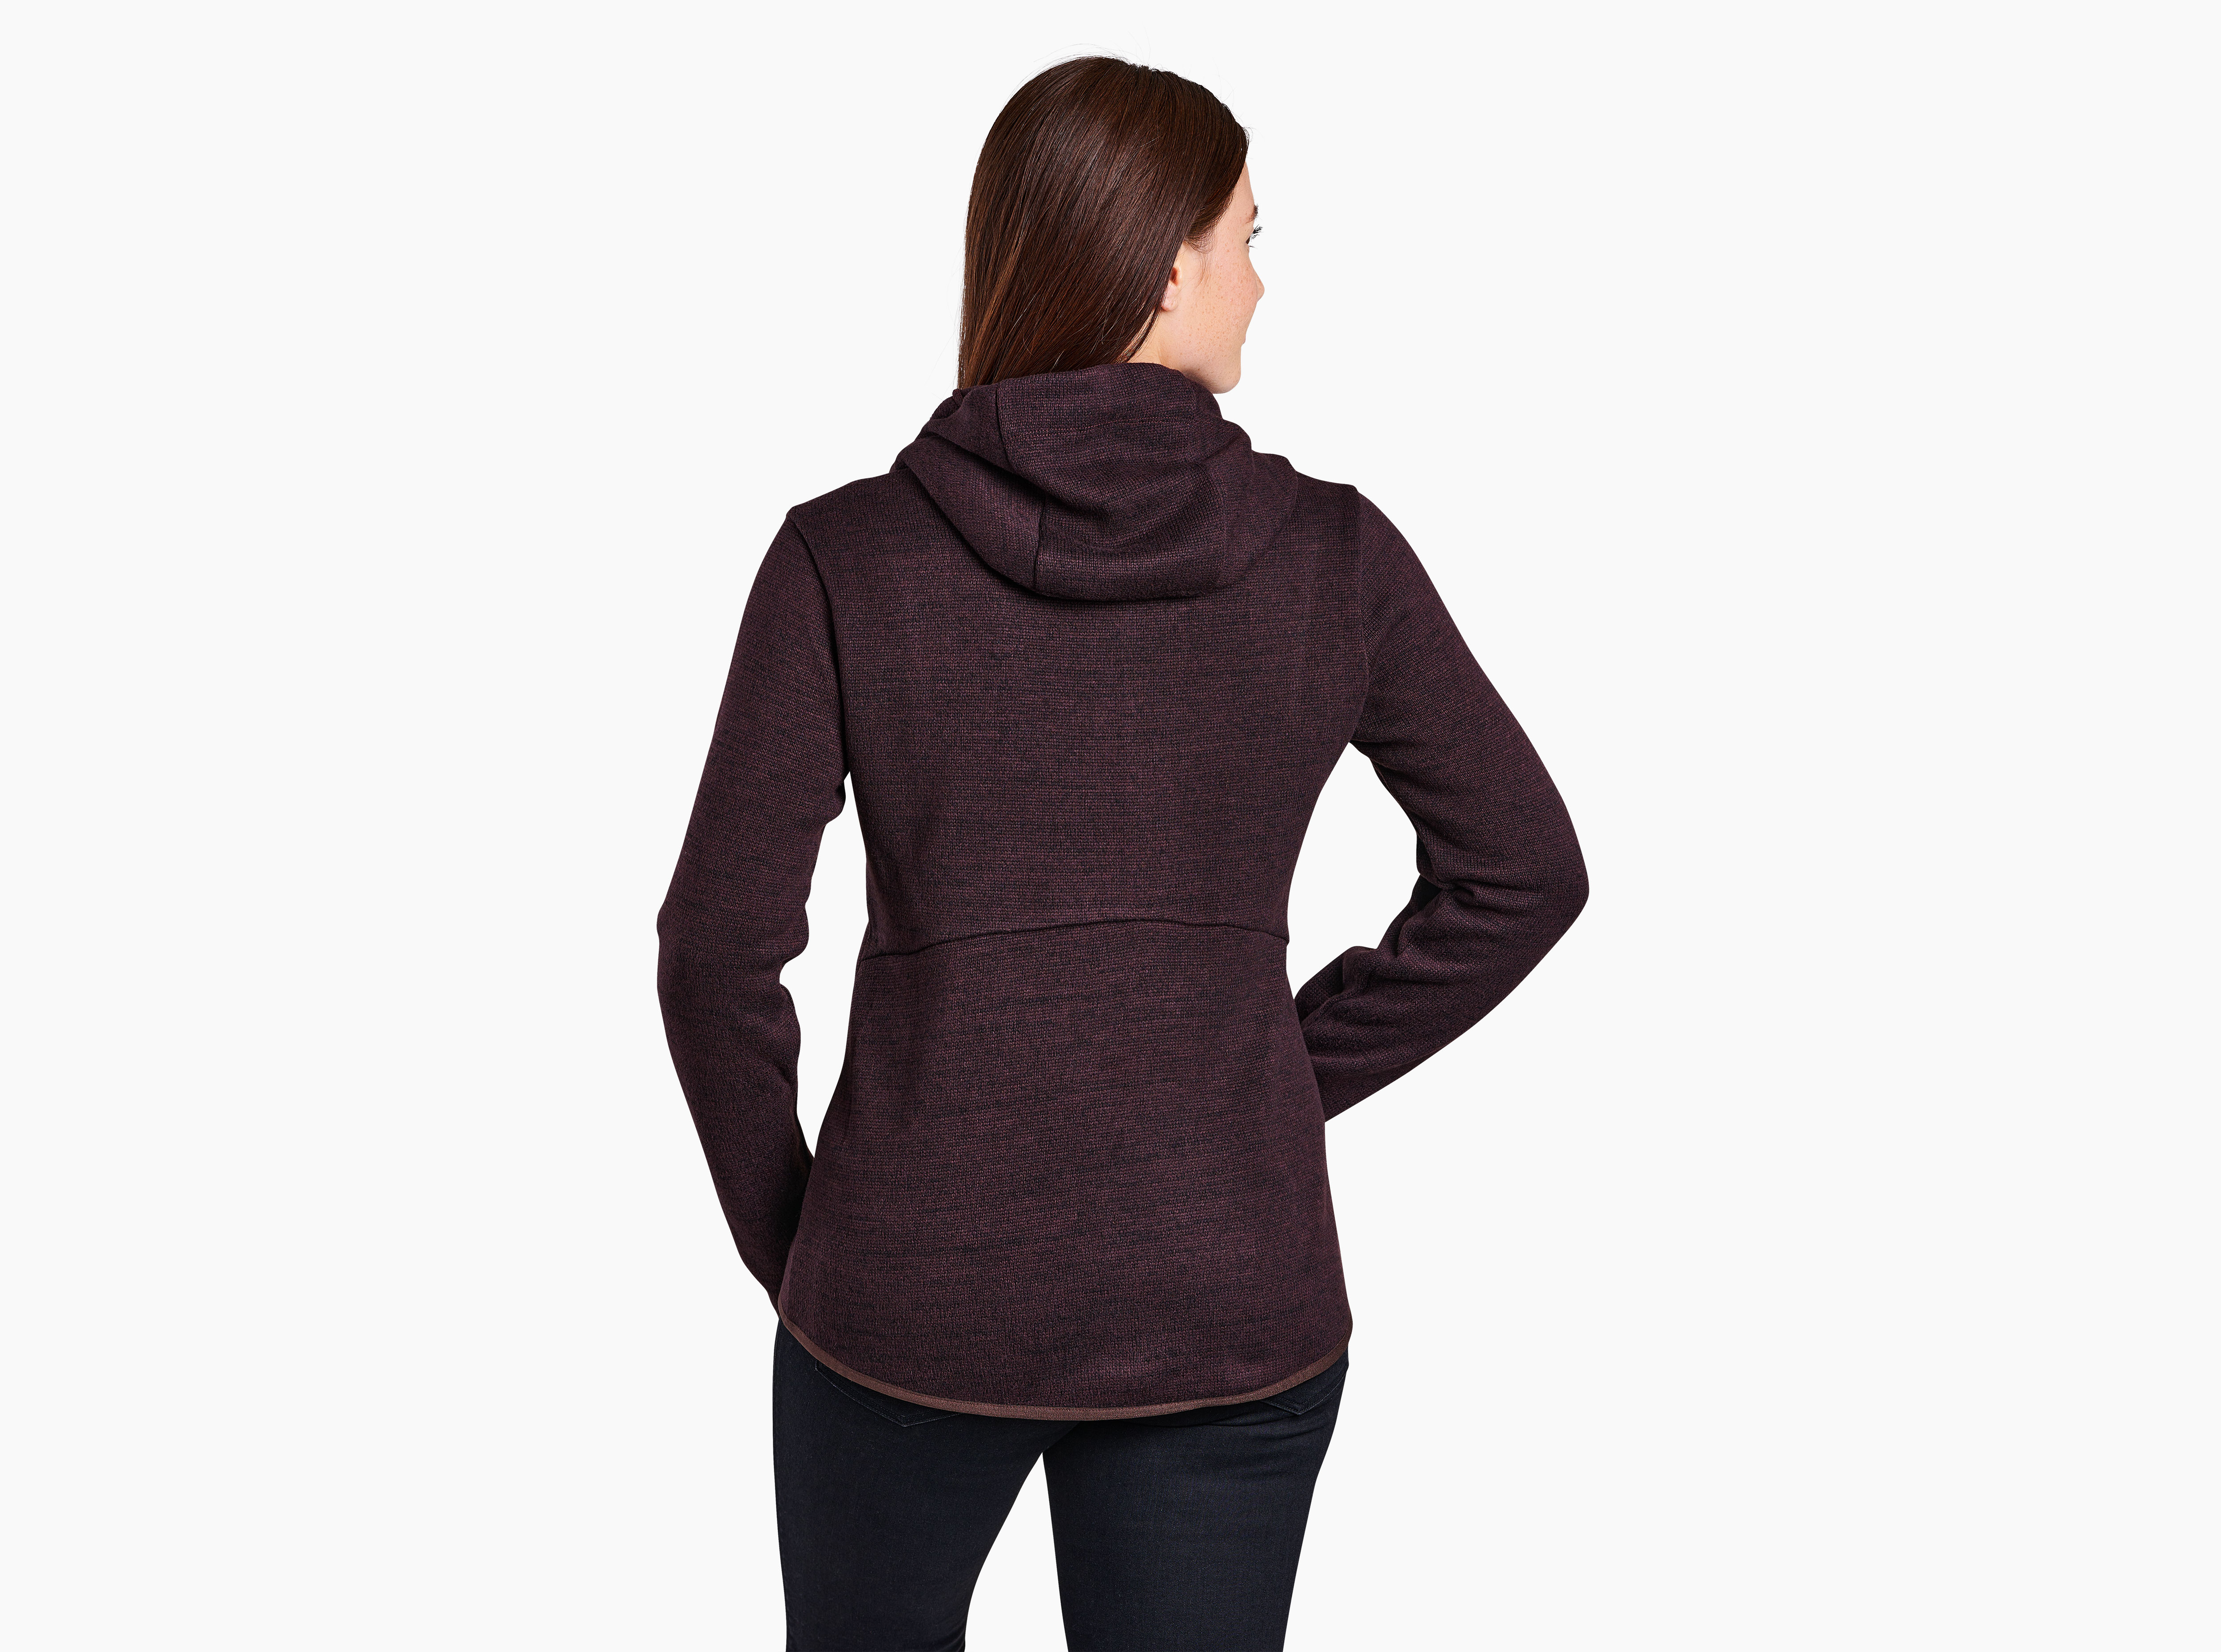 Kuhl Chianti Fleece Full Zip Hoodie Womens Size Large Sweater Jacket Purple